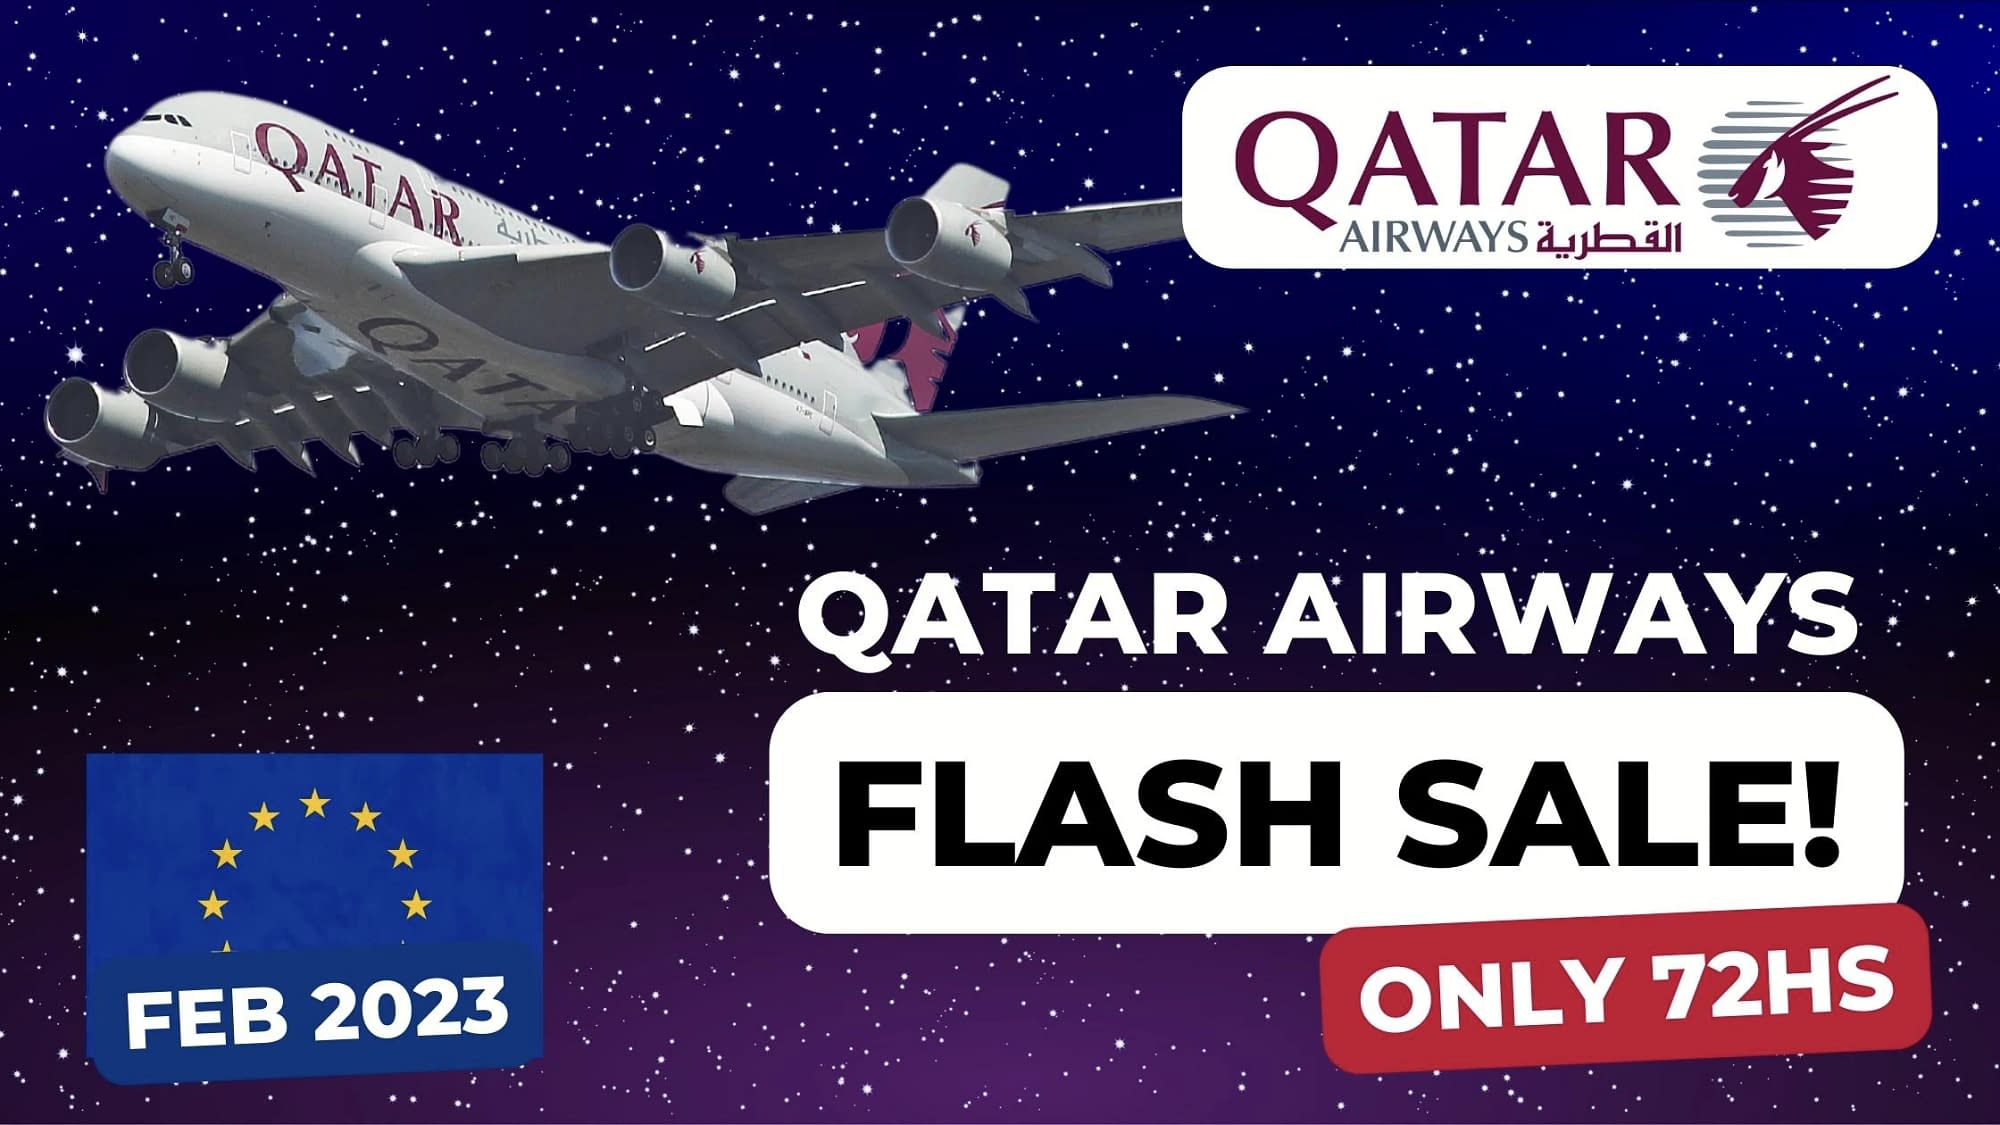 Qatar Airways Flash Sale February 2023